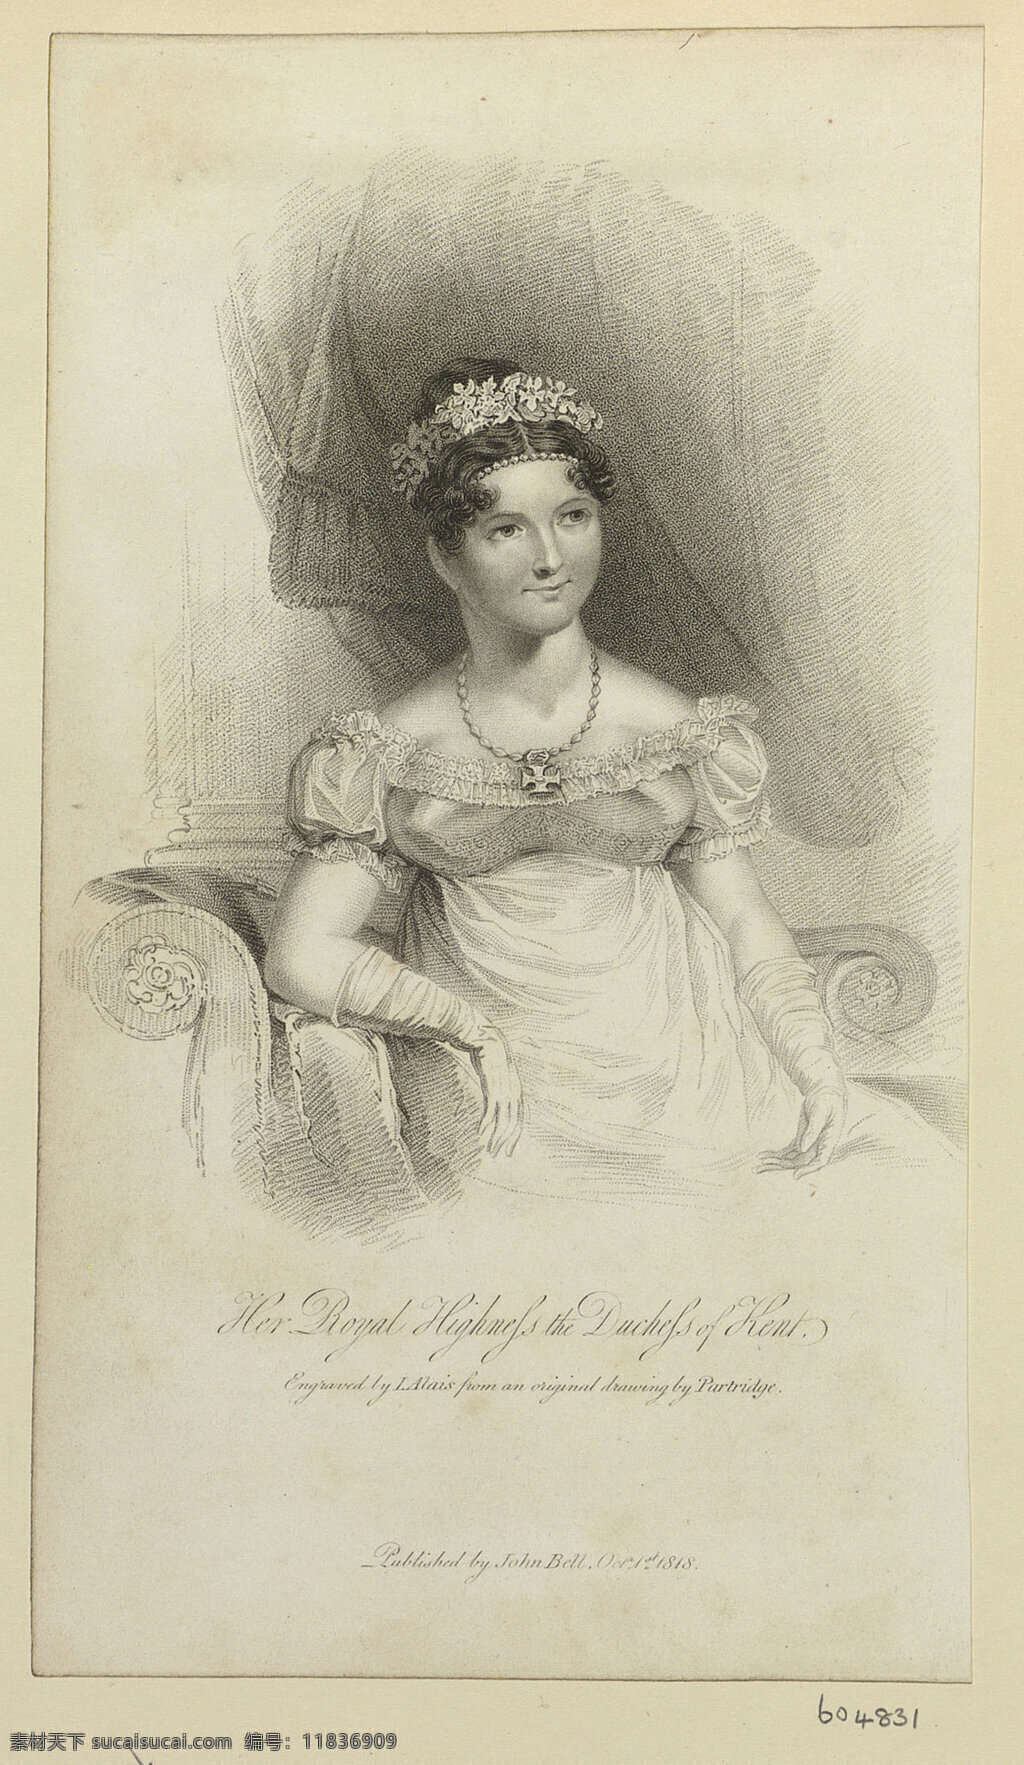 肯 特 公爵 夫人 维多利亚 萨克森科堡 哥达 公主 维多利亚女王 生母 素描画 世纪 水彩画 文化艺术 绘画书法